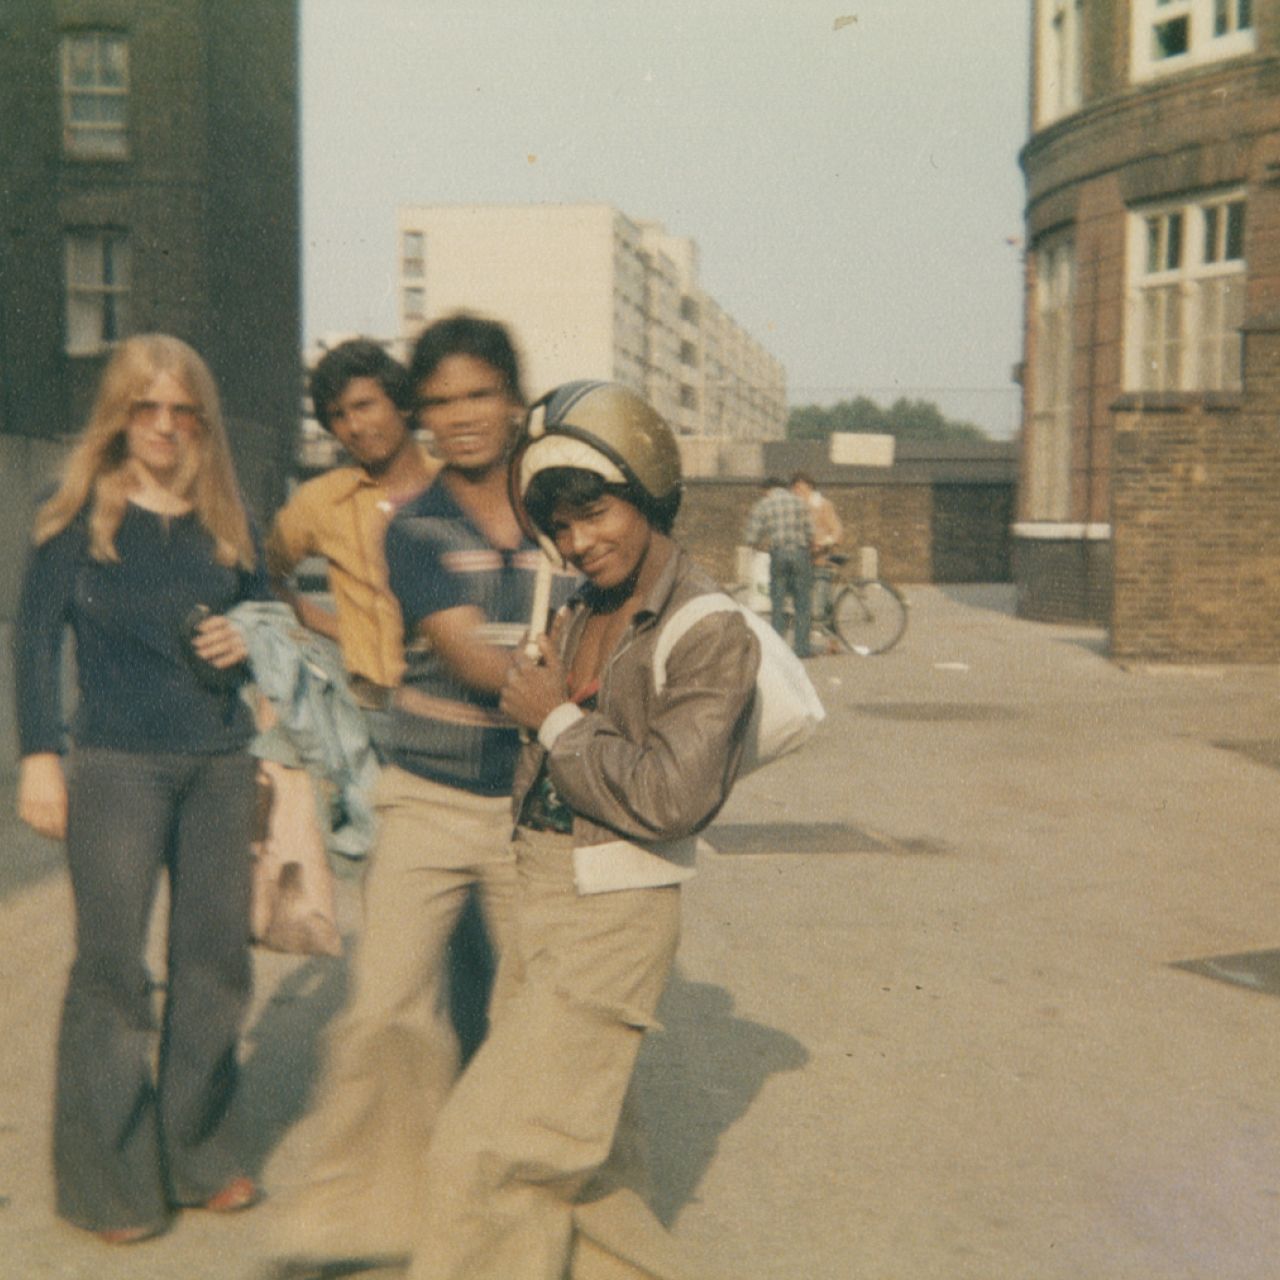 Bev Zalcock, Adult learners in Whitechapel, 1975 